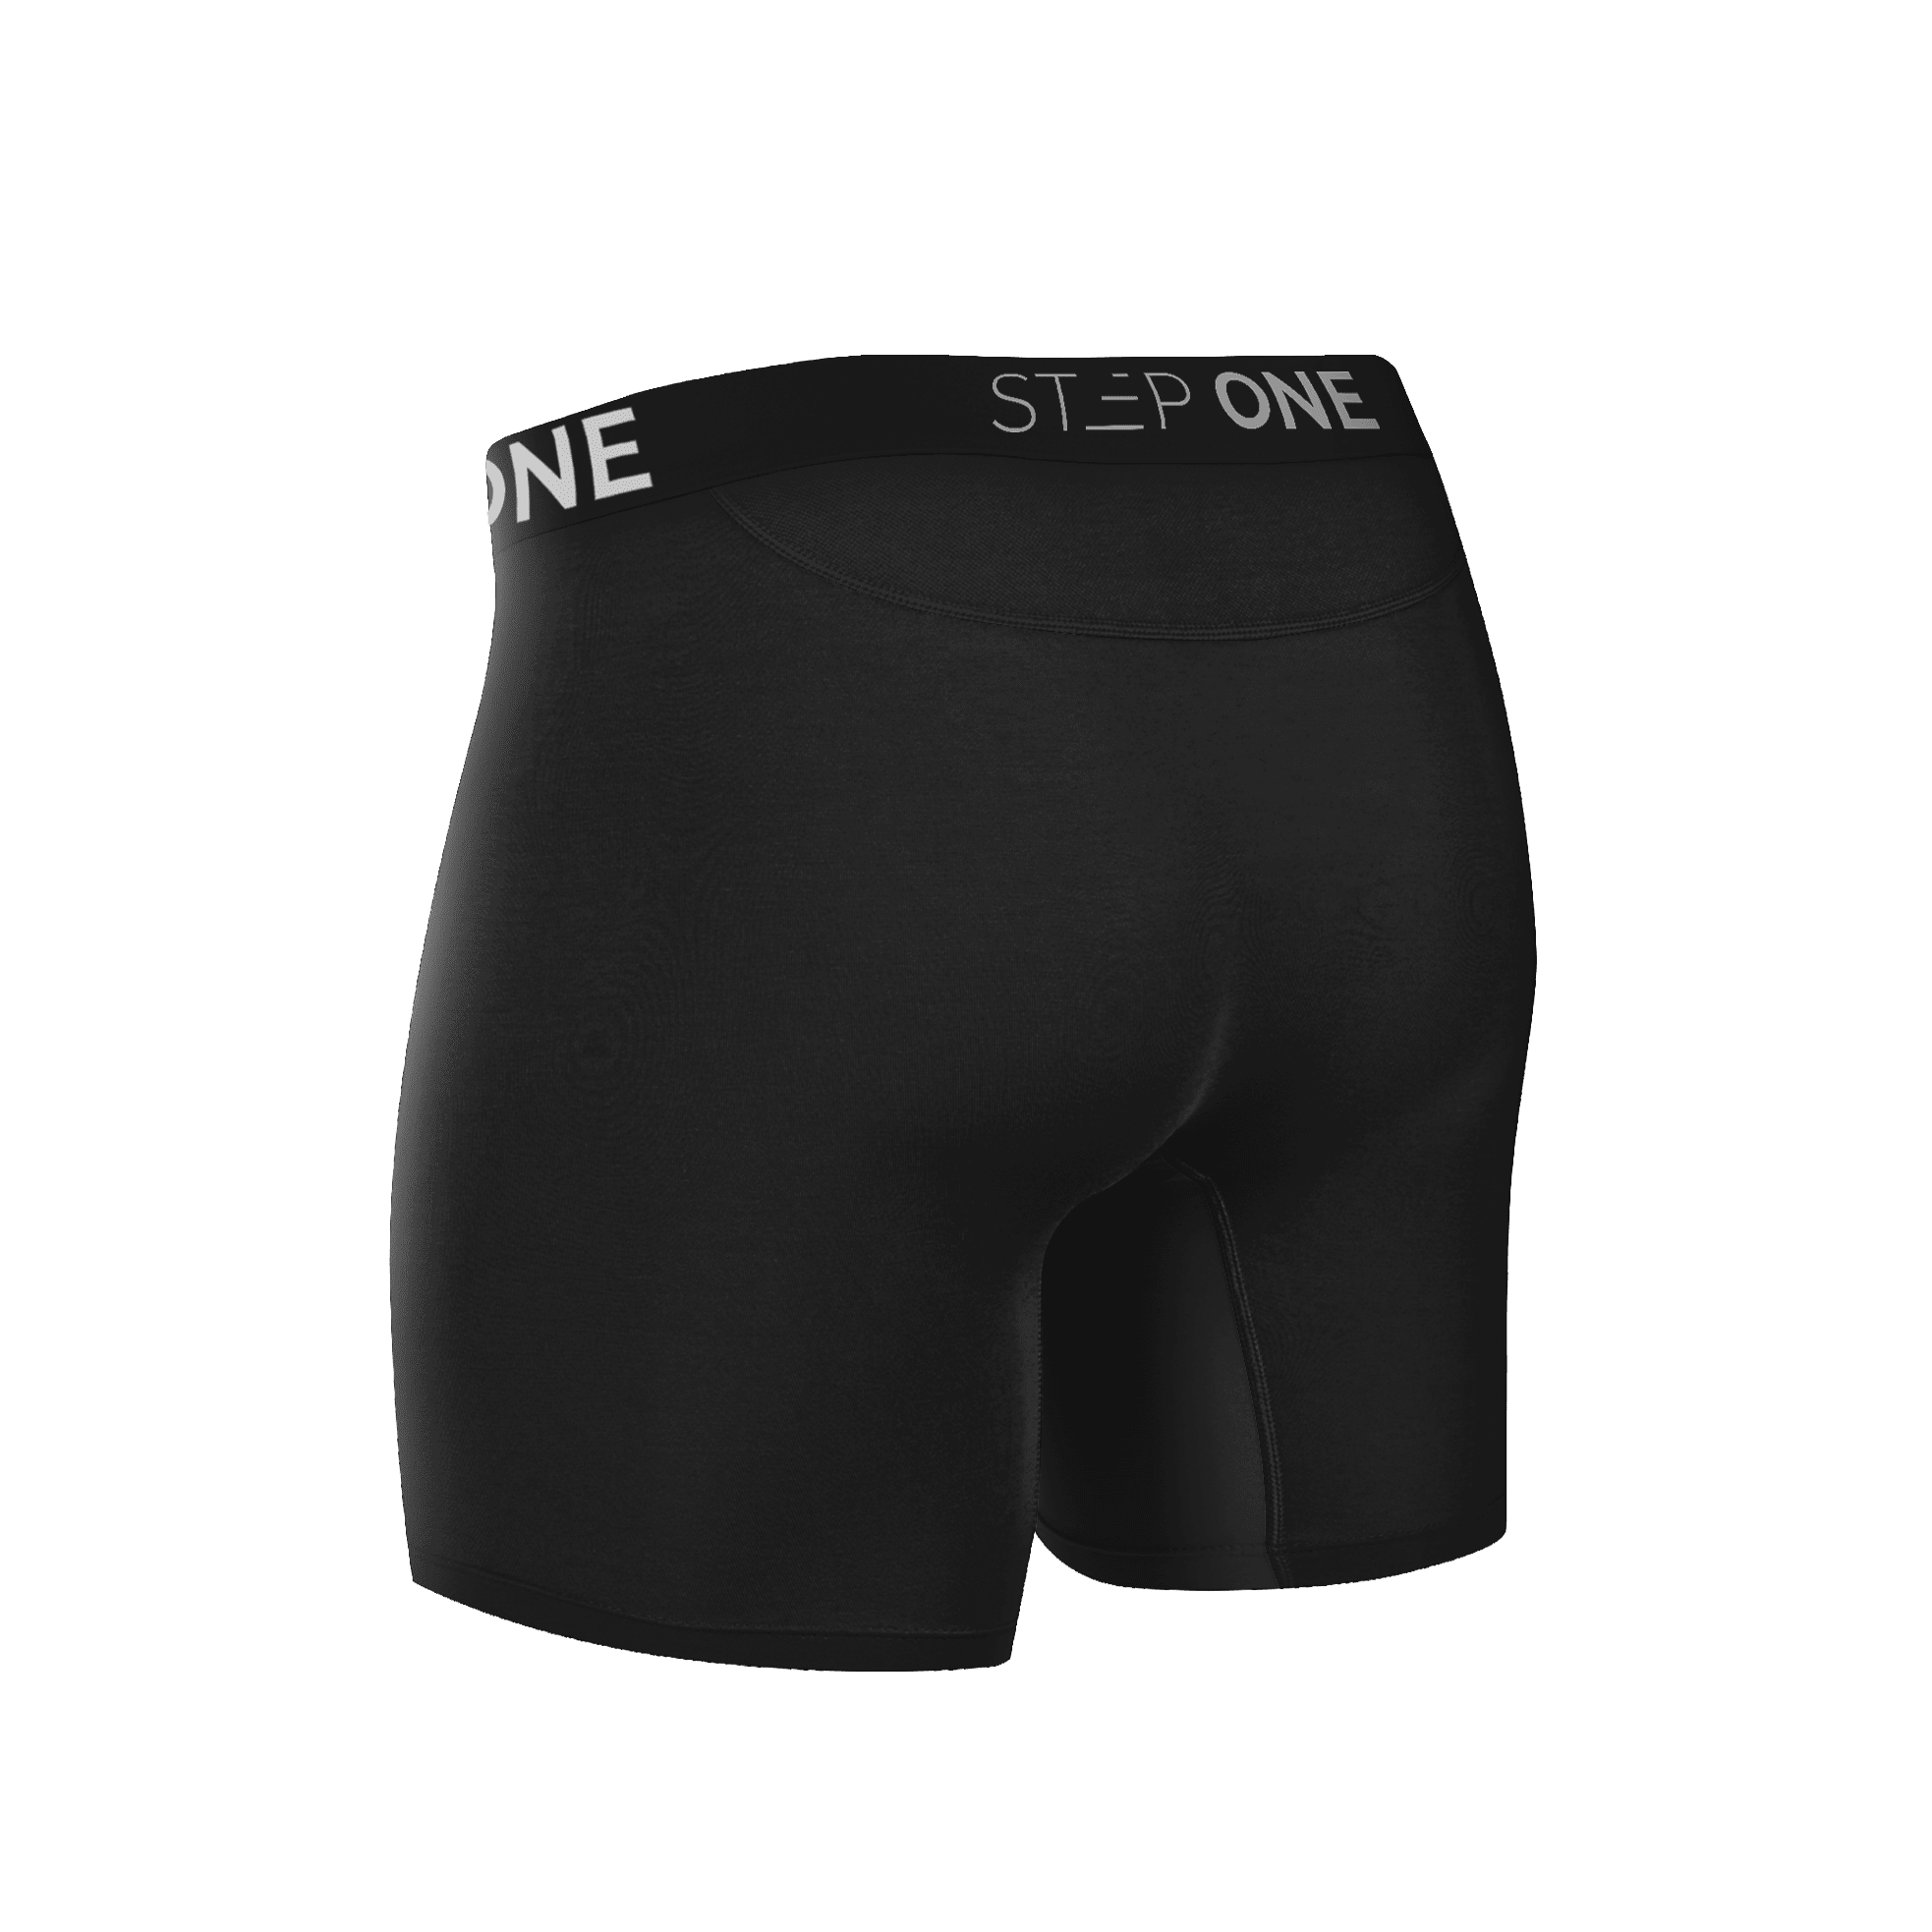 Buy Underwear Online at Step One